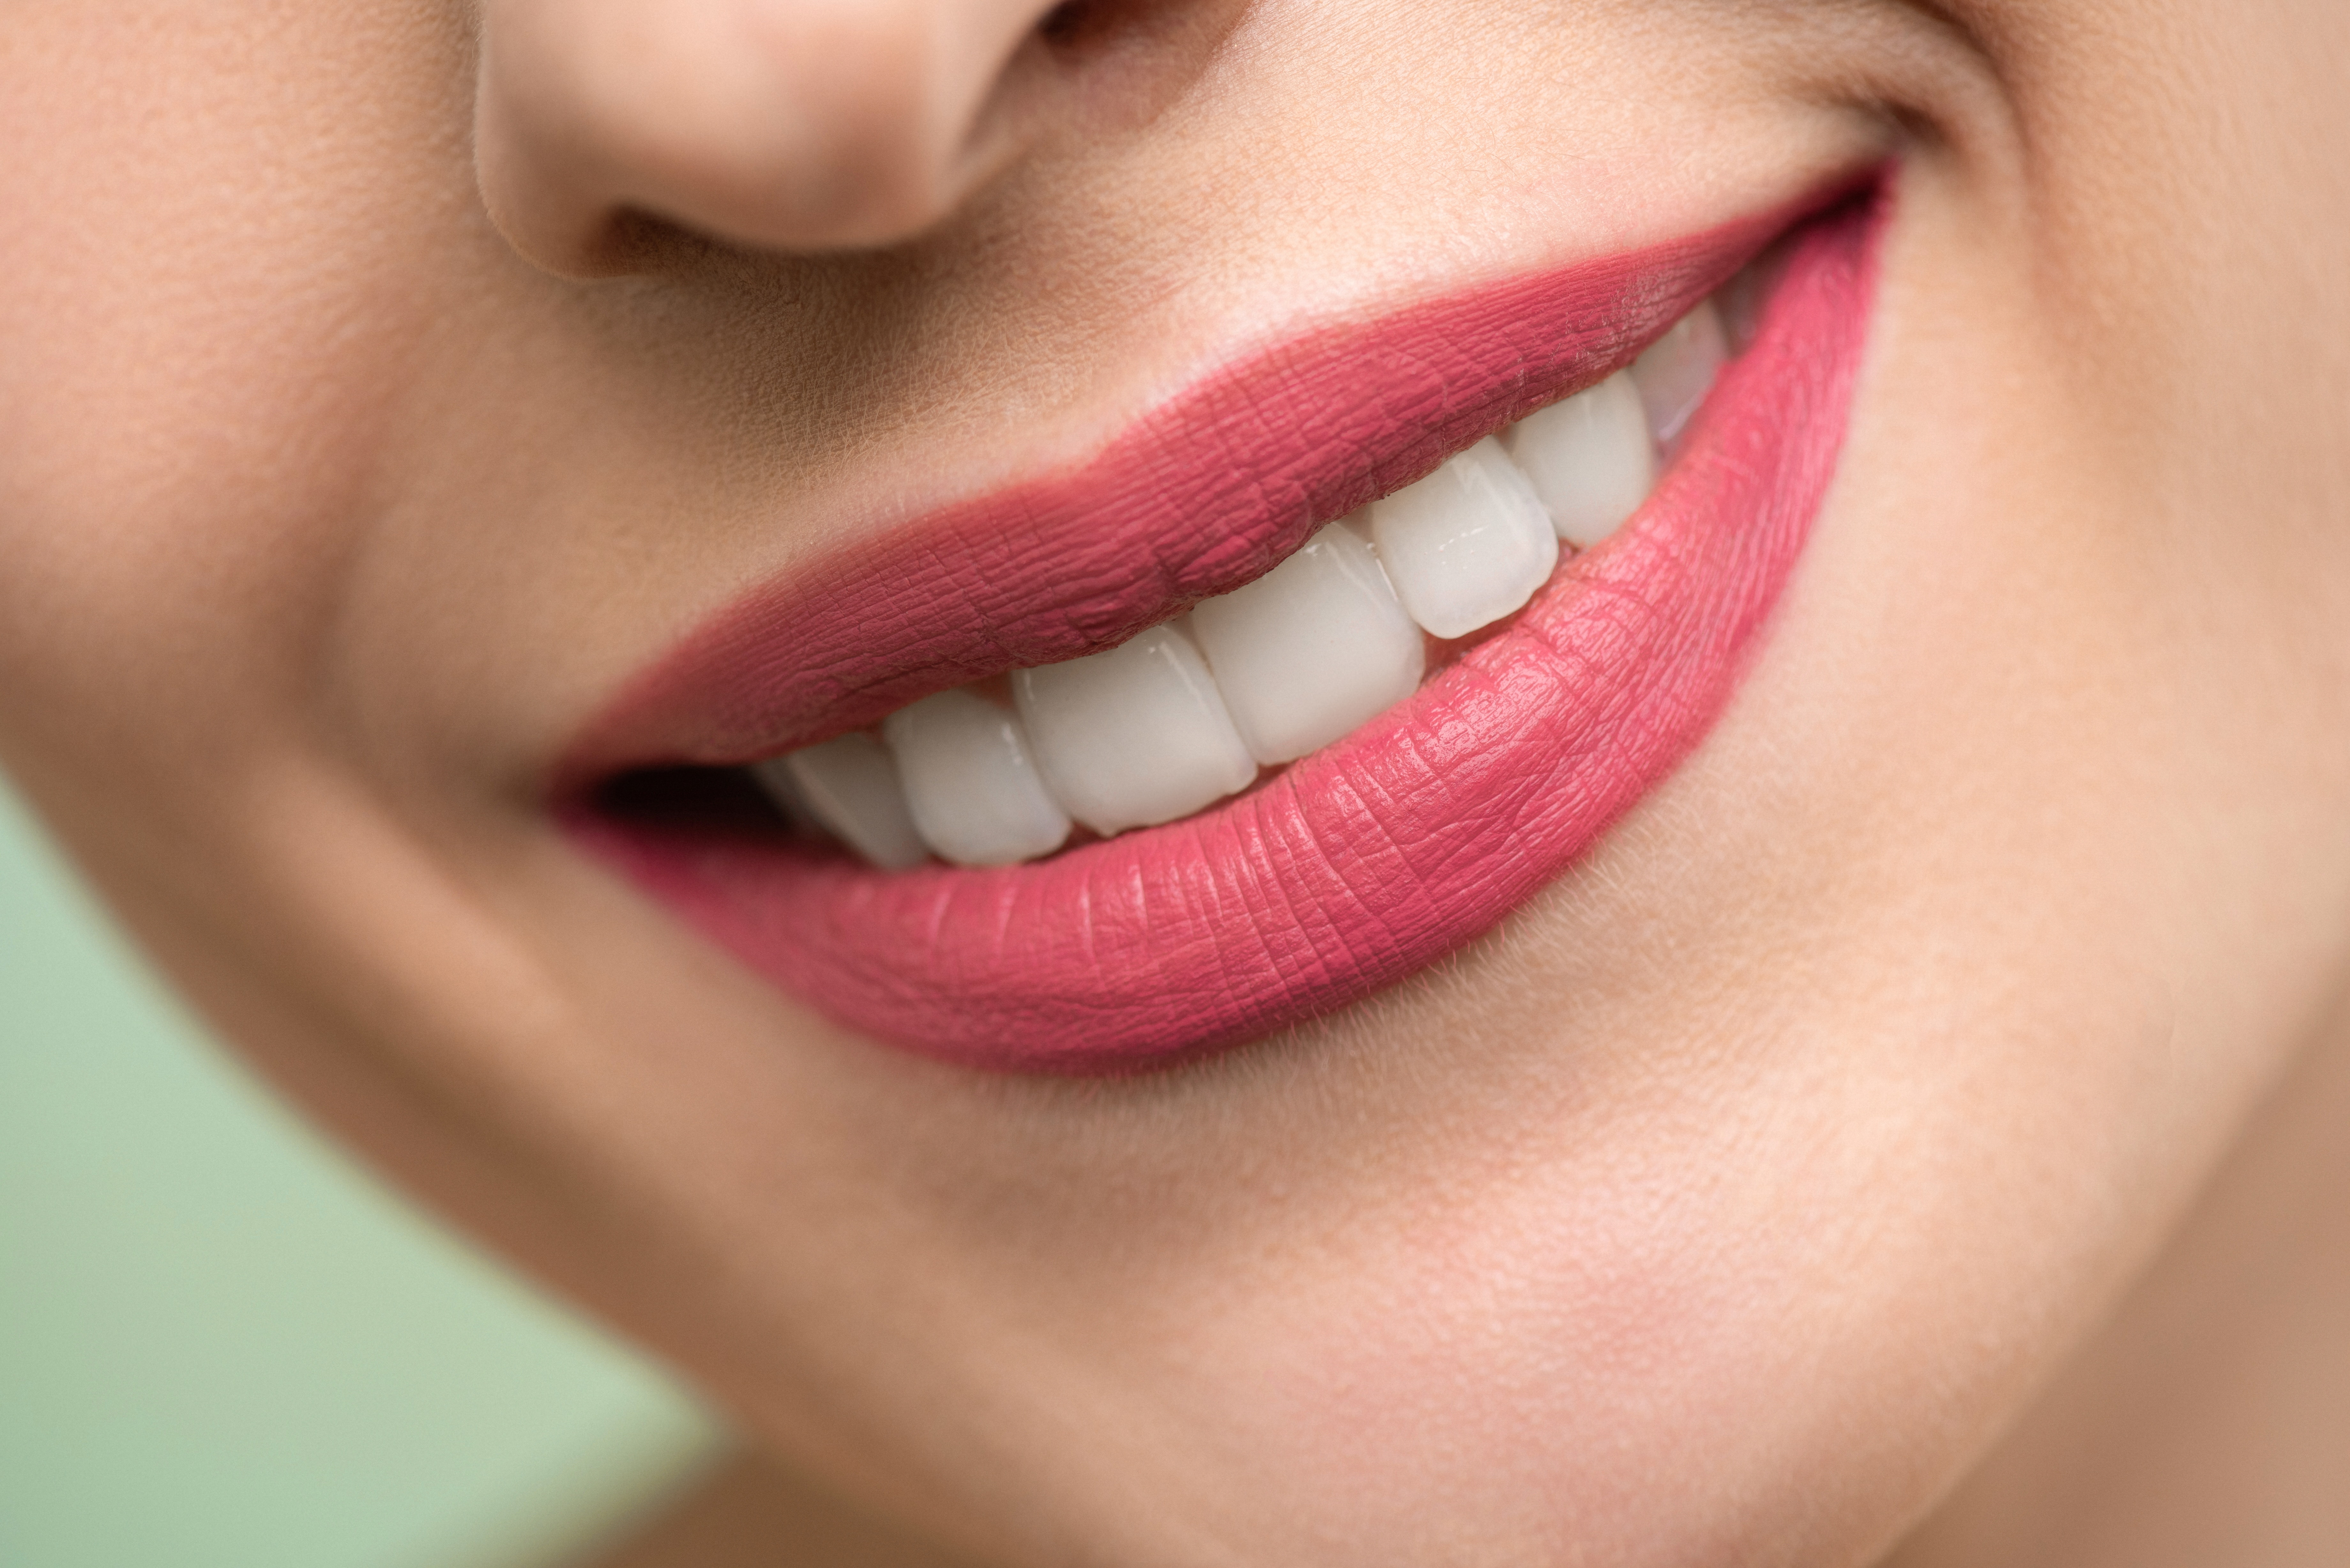 الدواء يعمل على تثبيط البروتين الذي يمنع نمو الأسنان (بيكسيلز)